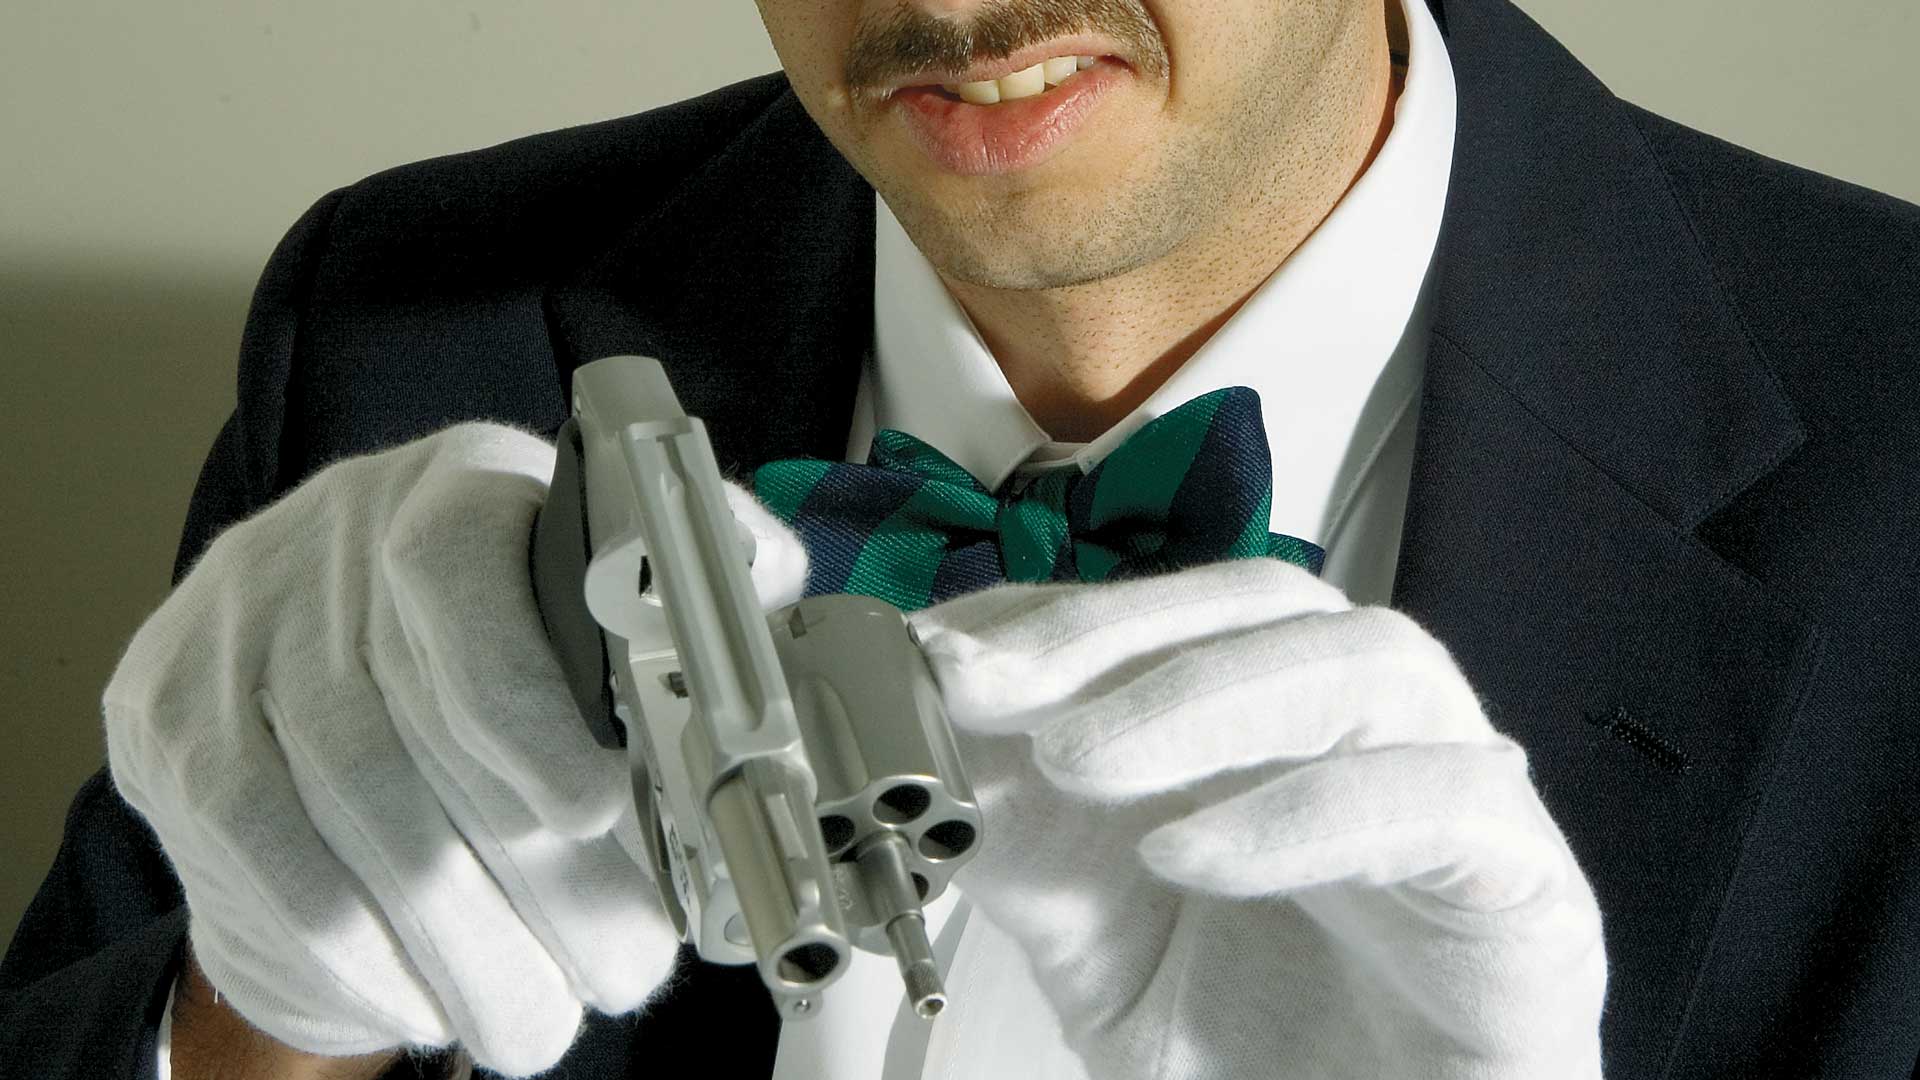 man white gloves gun revolver cleaning bowtie black coat